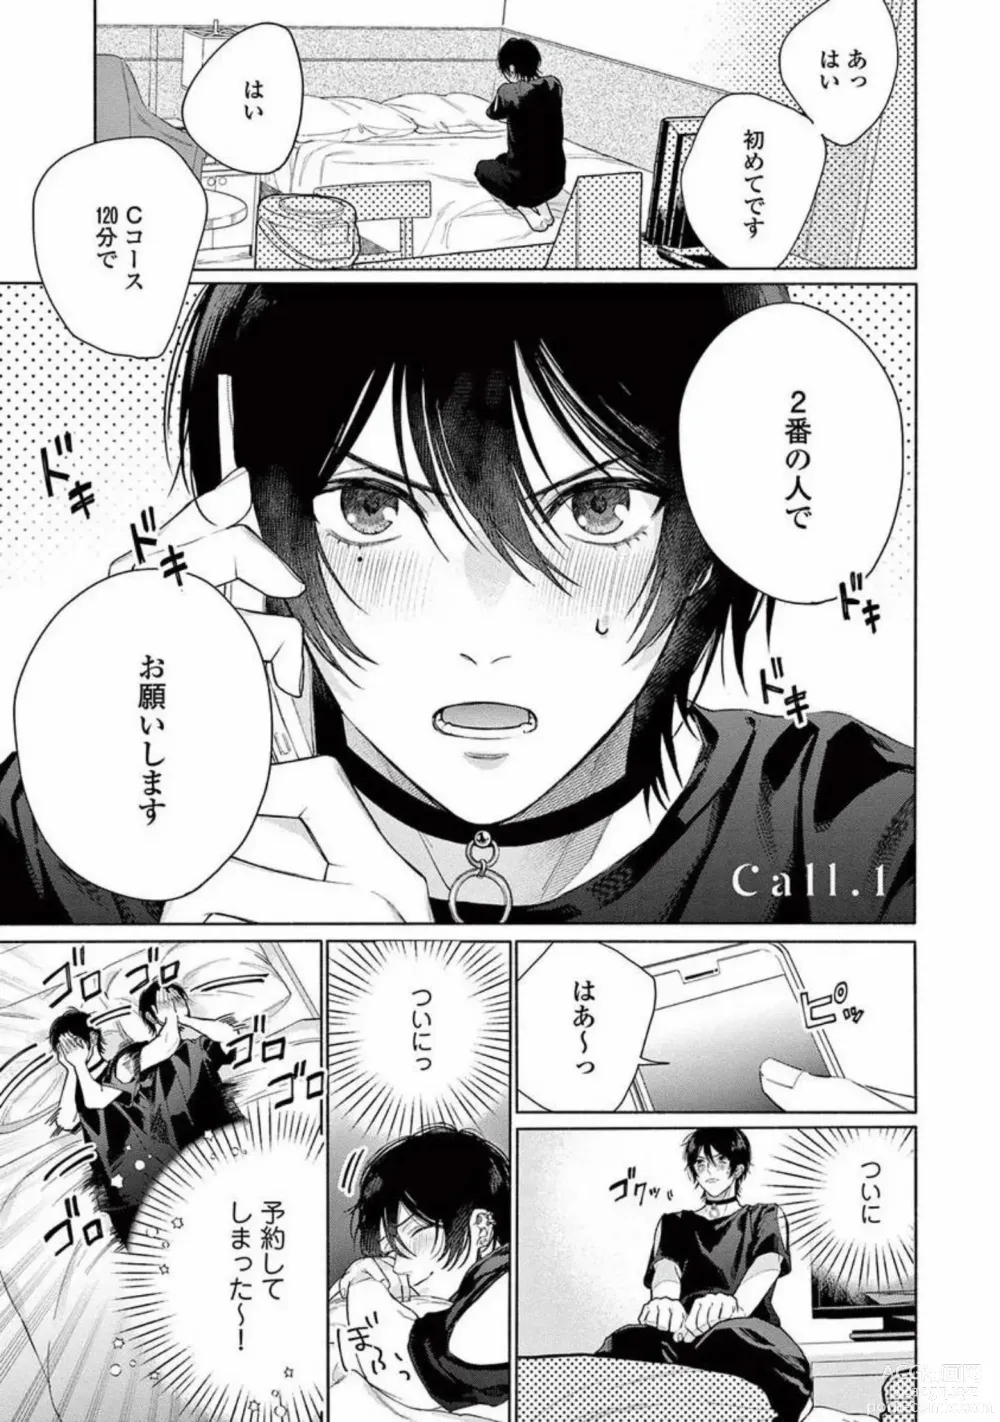 Page 5 of manga Junjou de Nani ga Warui - Whats wrong with being innocent?